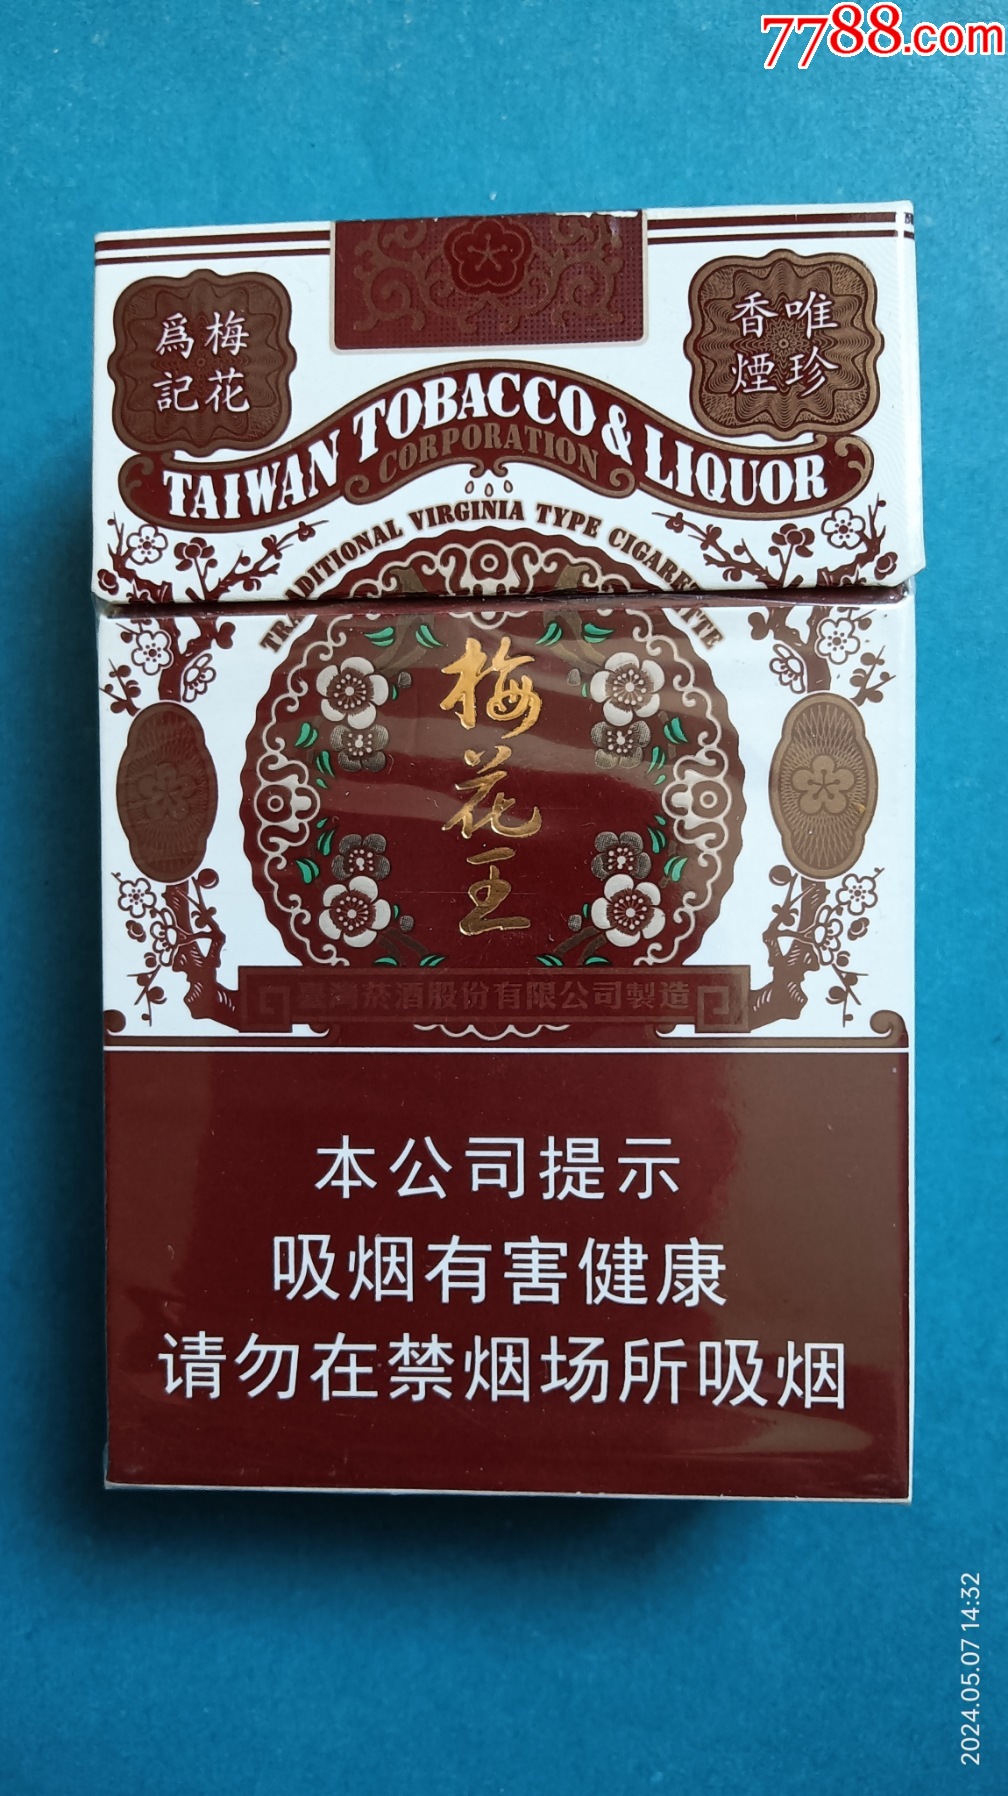 烟标:梅花王·红硬包烟,梅花为记,唯珍香烟,台湾烟酒股份有限公司制造